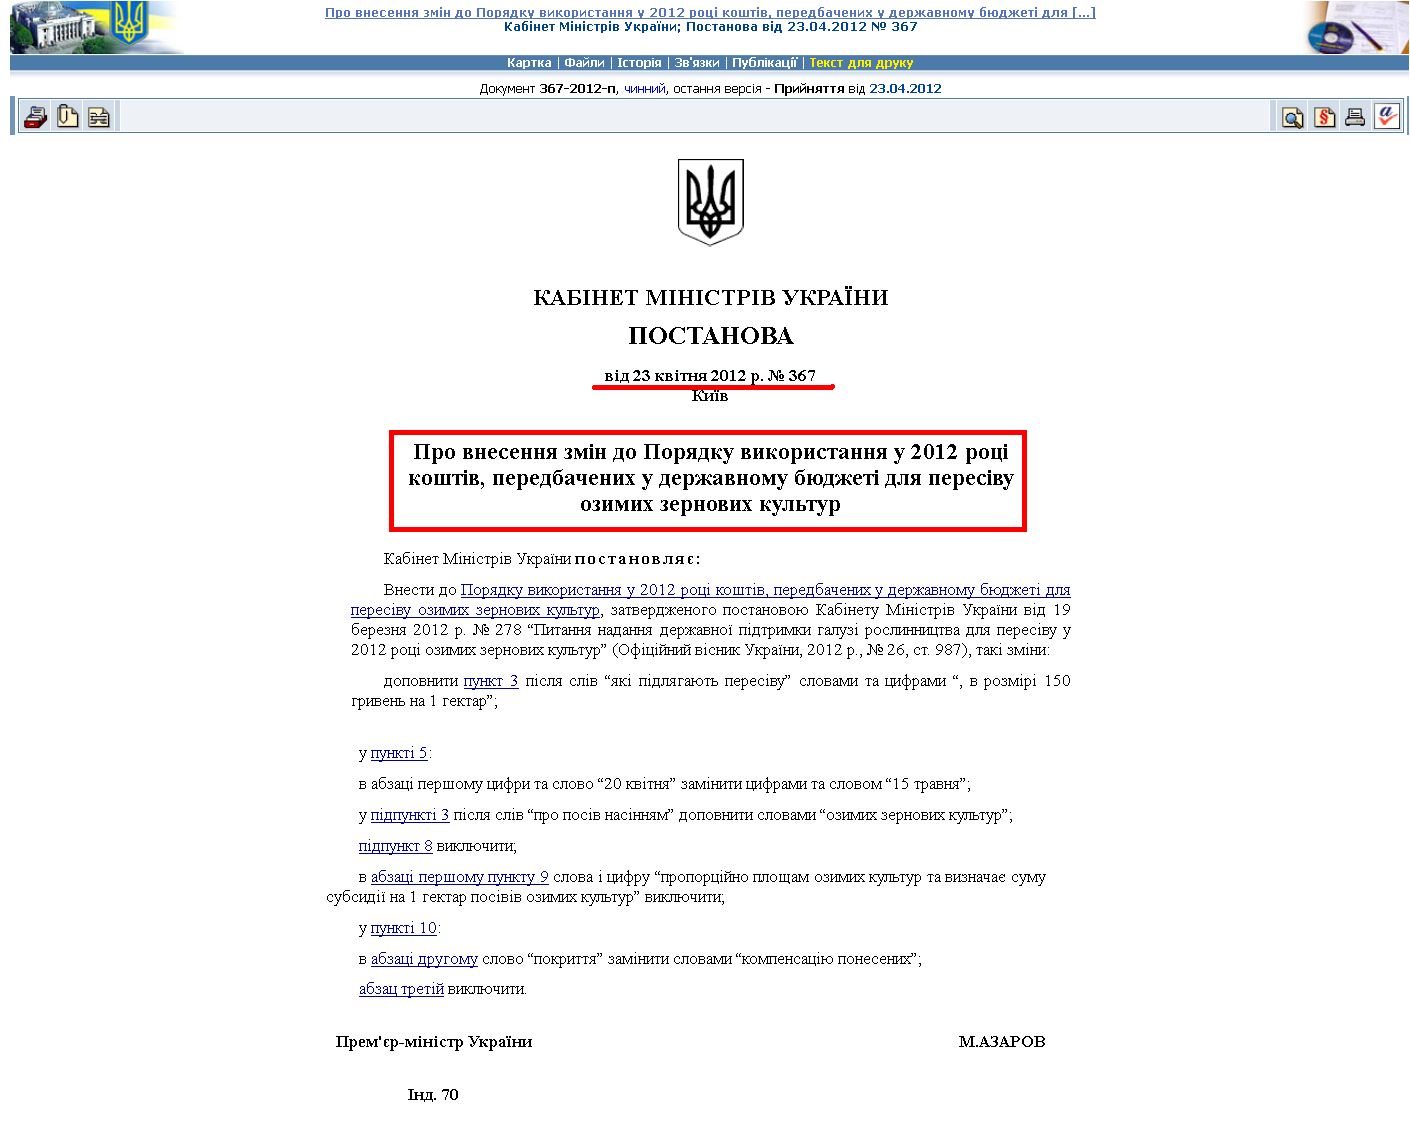 http://zakon1.rada.gov.ua/laws/show/367-2012-%D0%BF